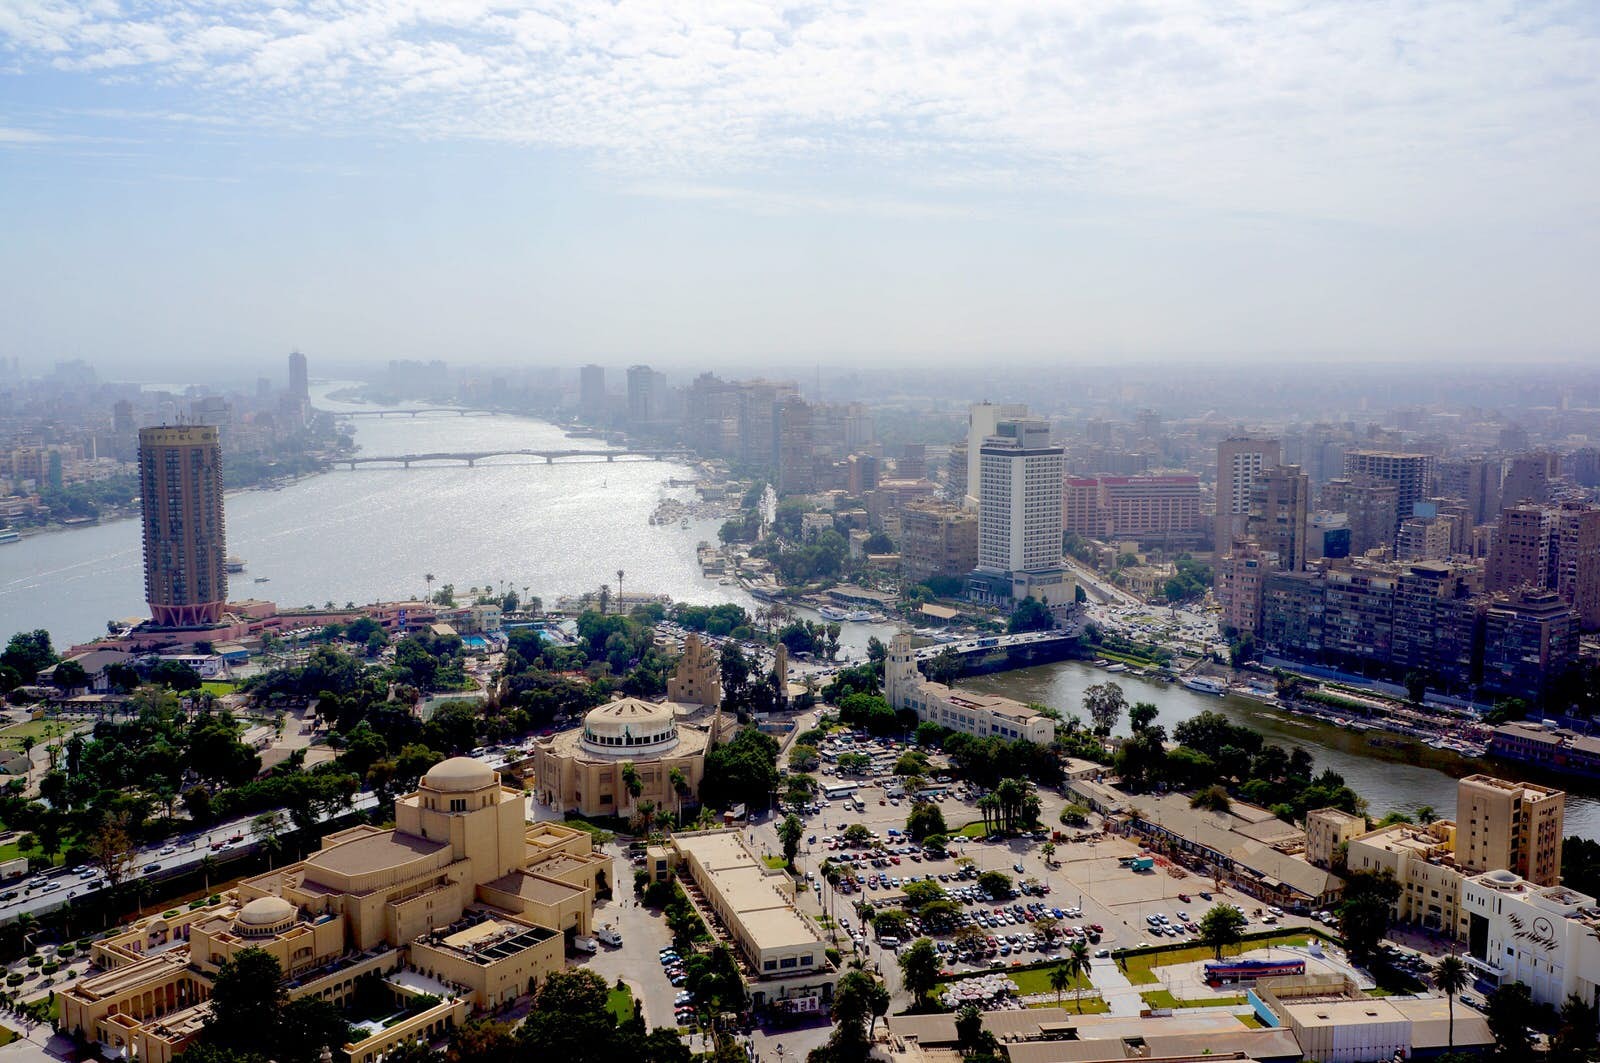 Les meilleurs points d accès Instagram au Caire 